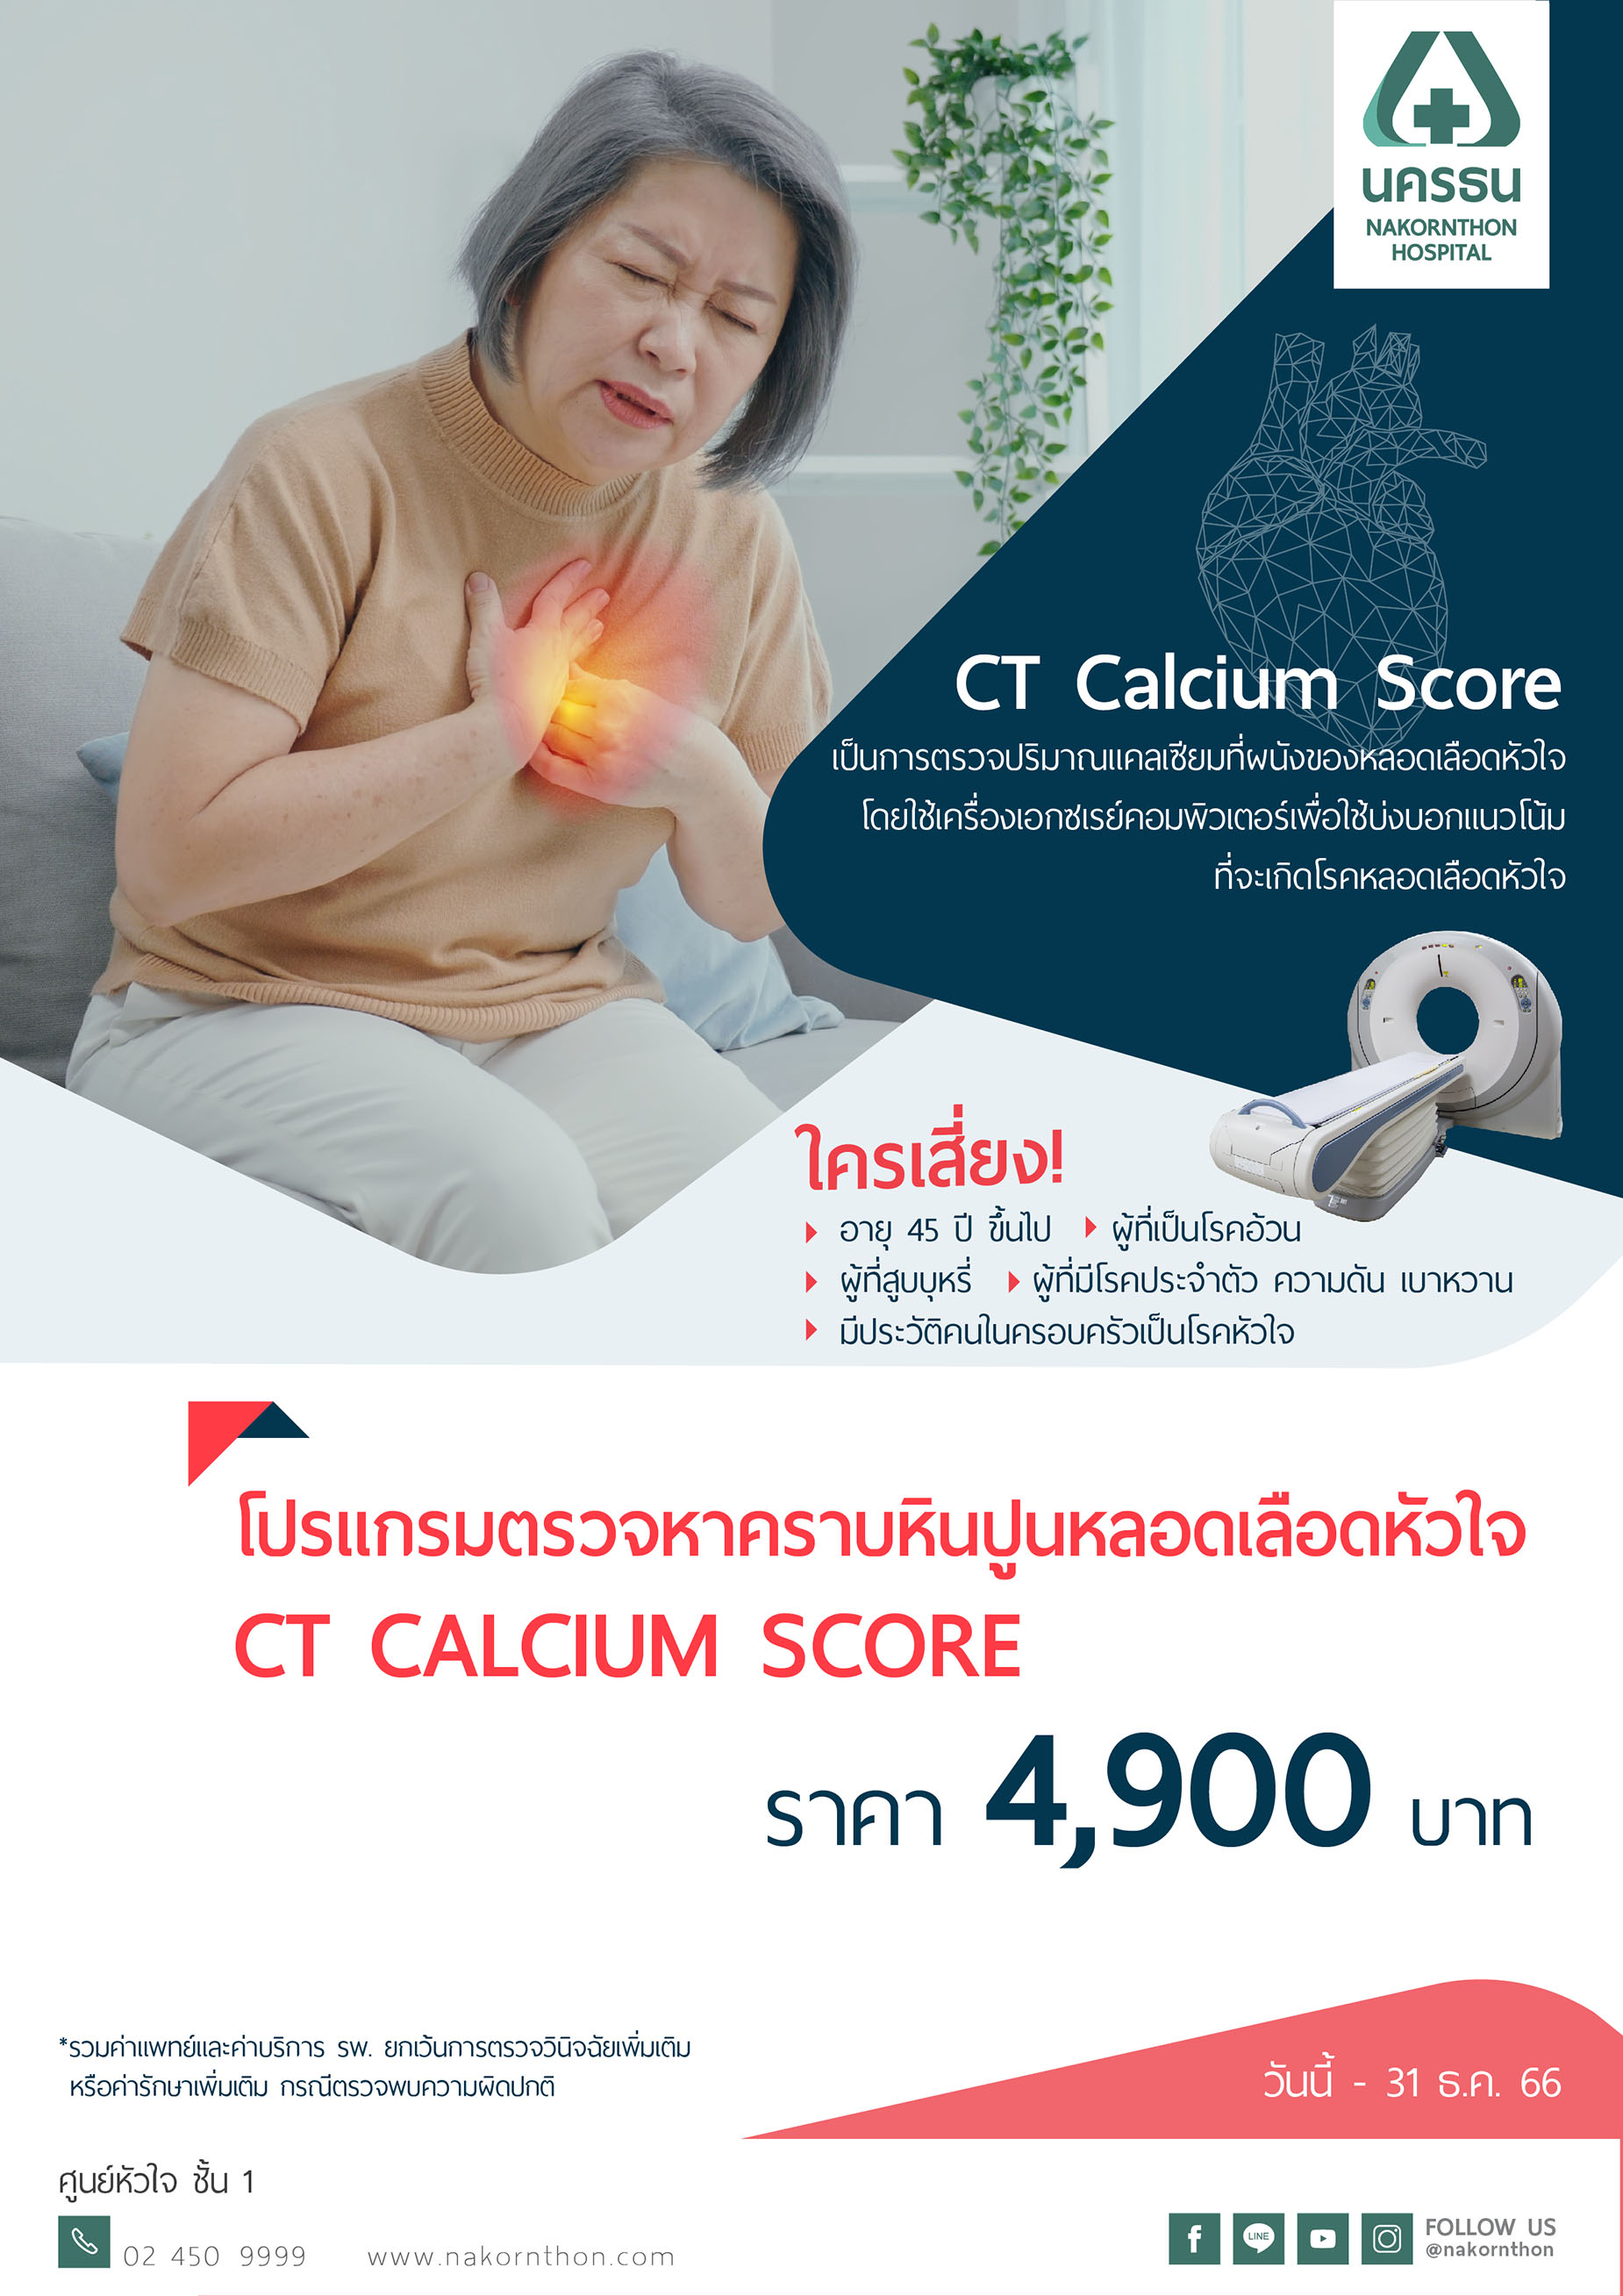 โปรแกรมตรวจหาคราบหินปูนหลอดเลือดหัวใจ CT Calcium Score